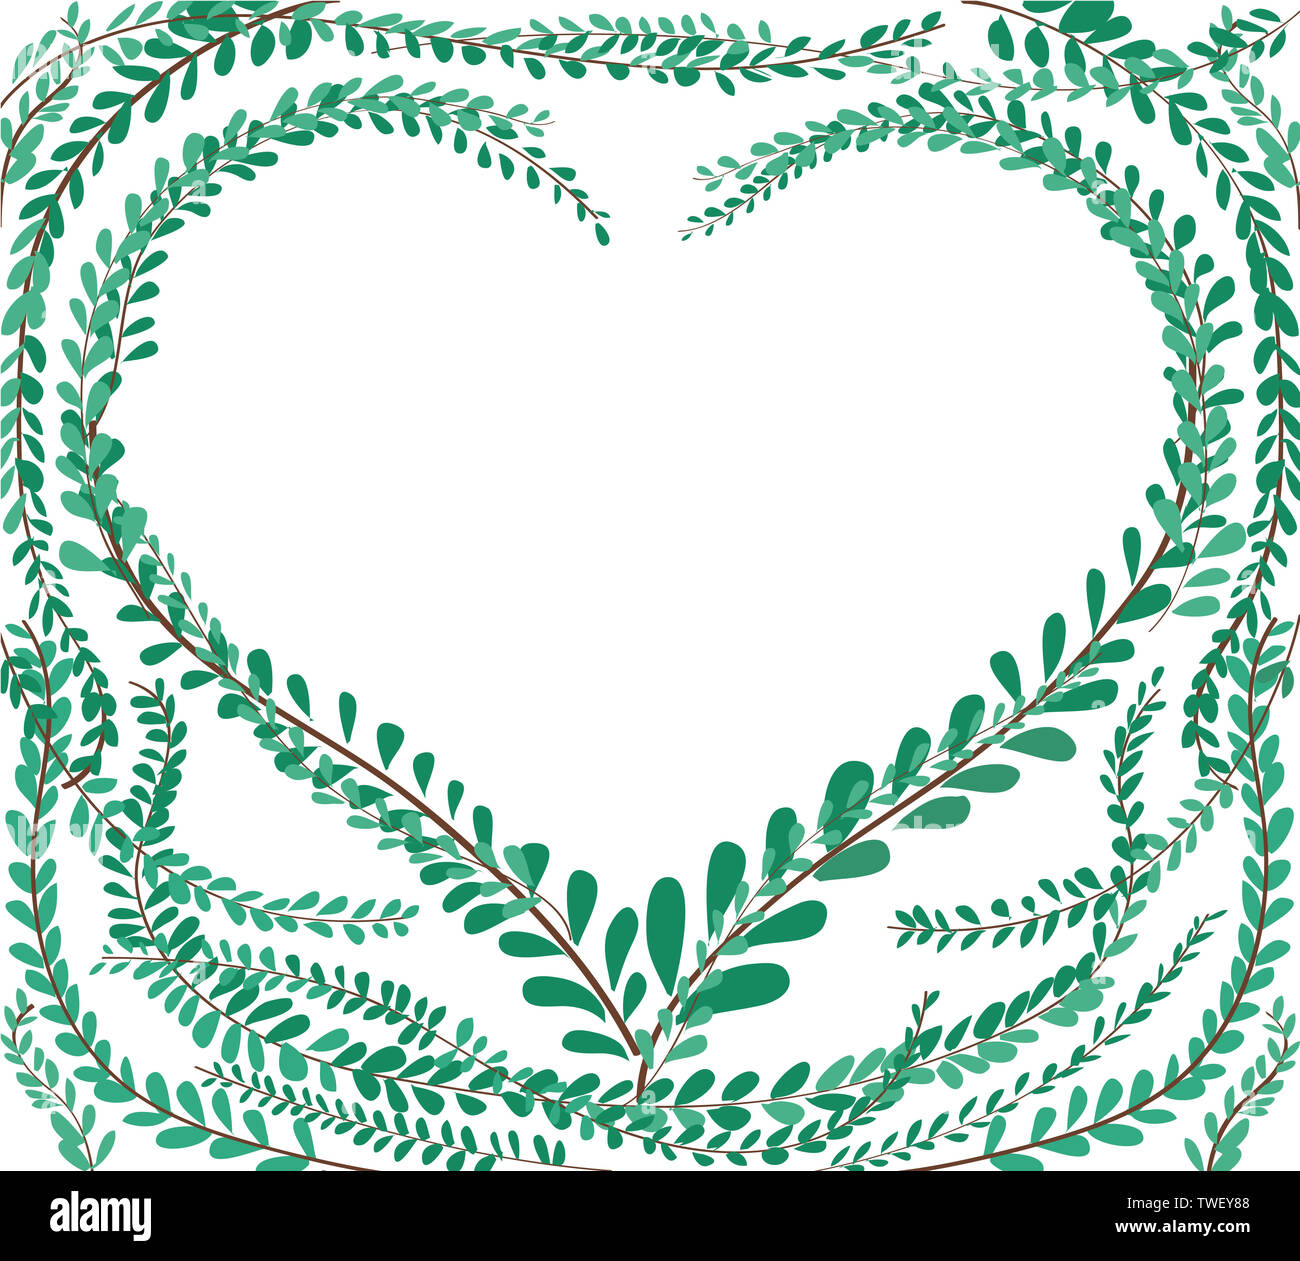 Herzform in grün Pastell treibt Mantel Tasten, Mexikanische daisy Hintergrund EPS 10. Stockfoto